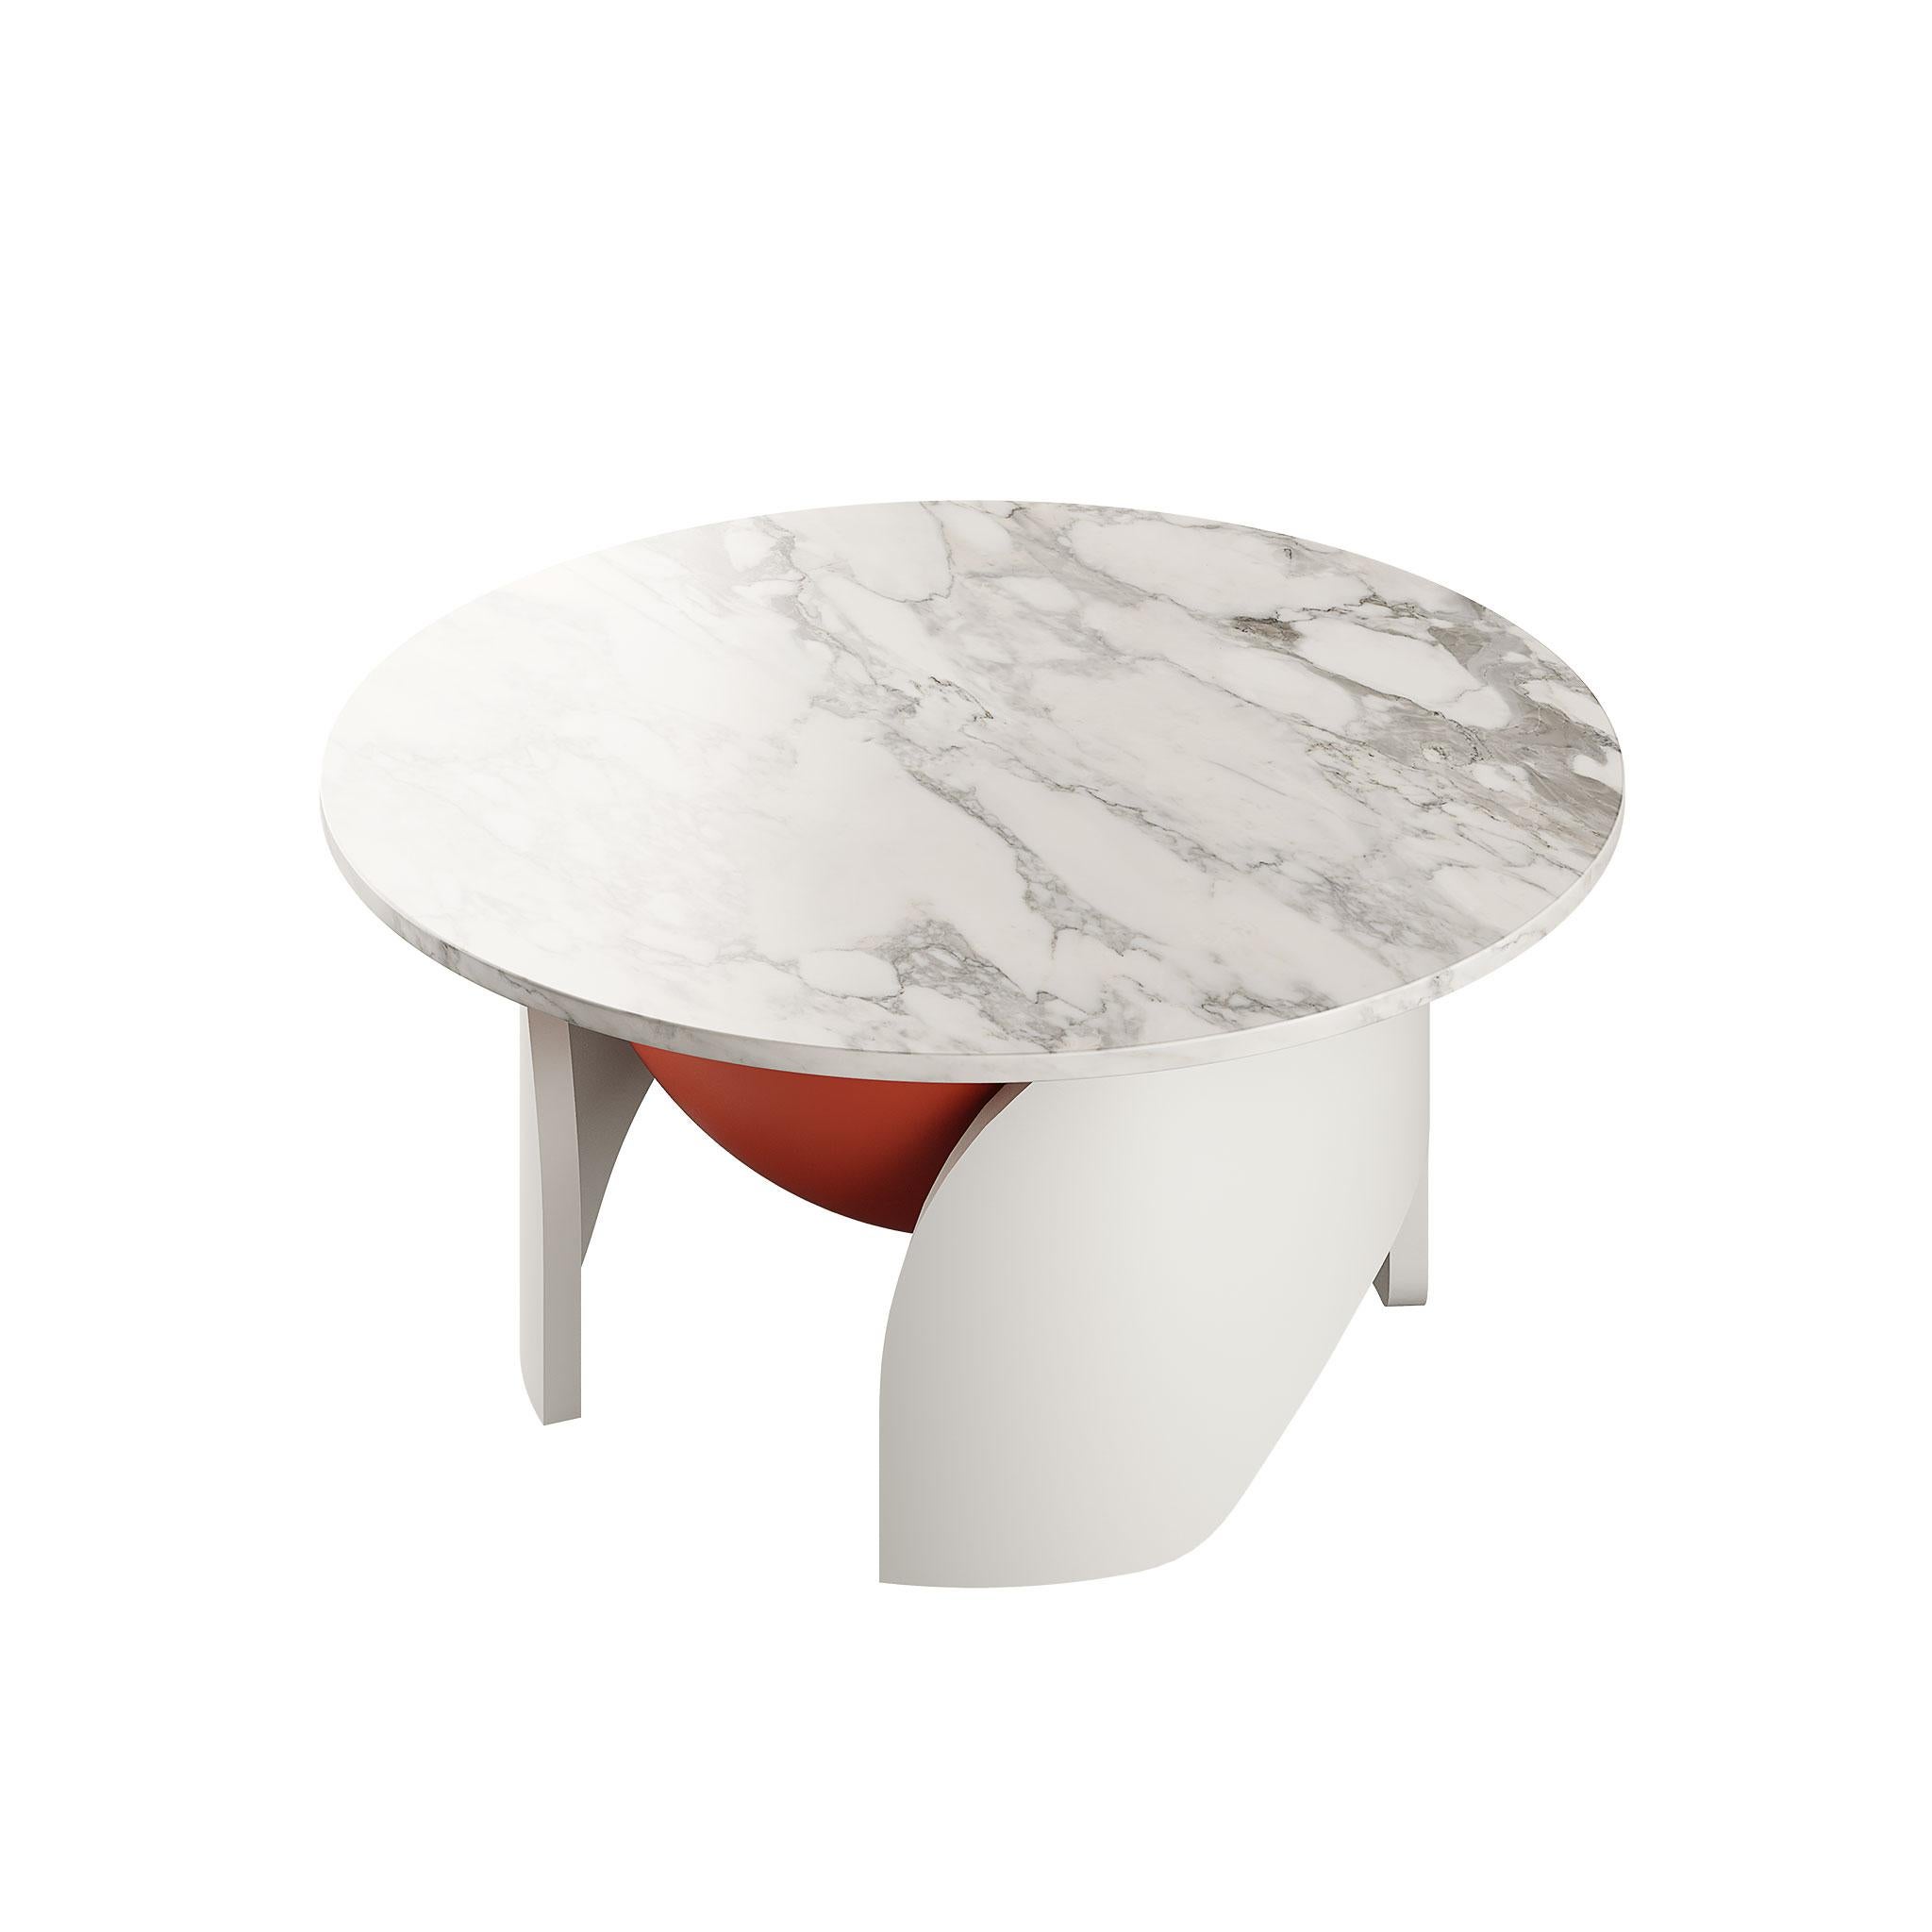 Moderne Table centrale ronde moderne Calacatta plateau en marbre blanc laqué gris et orange mat en vente